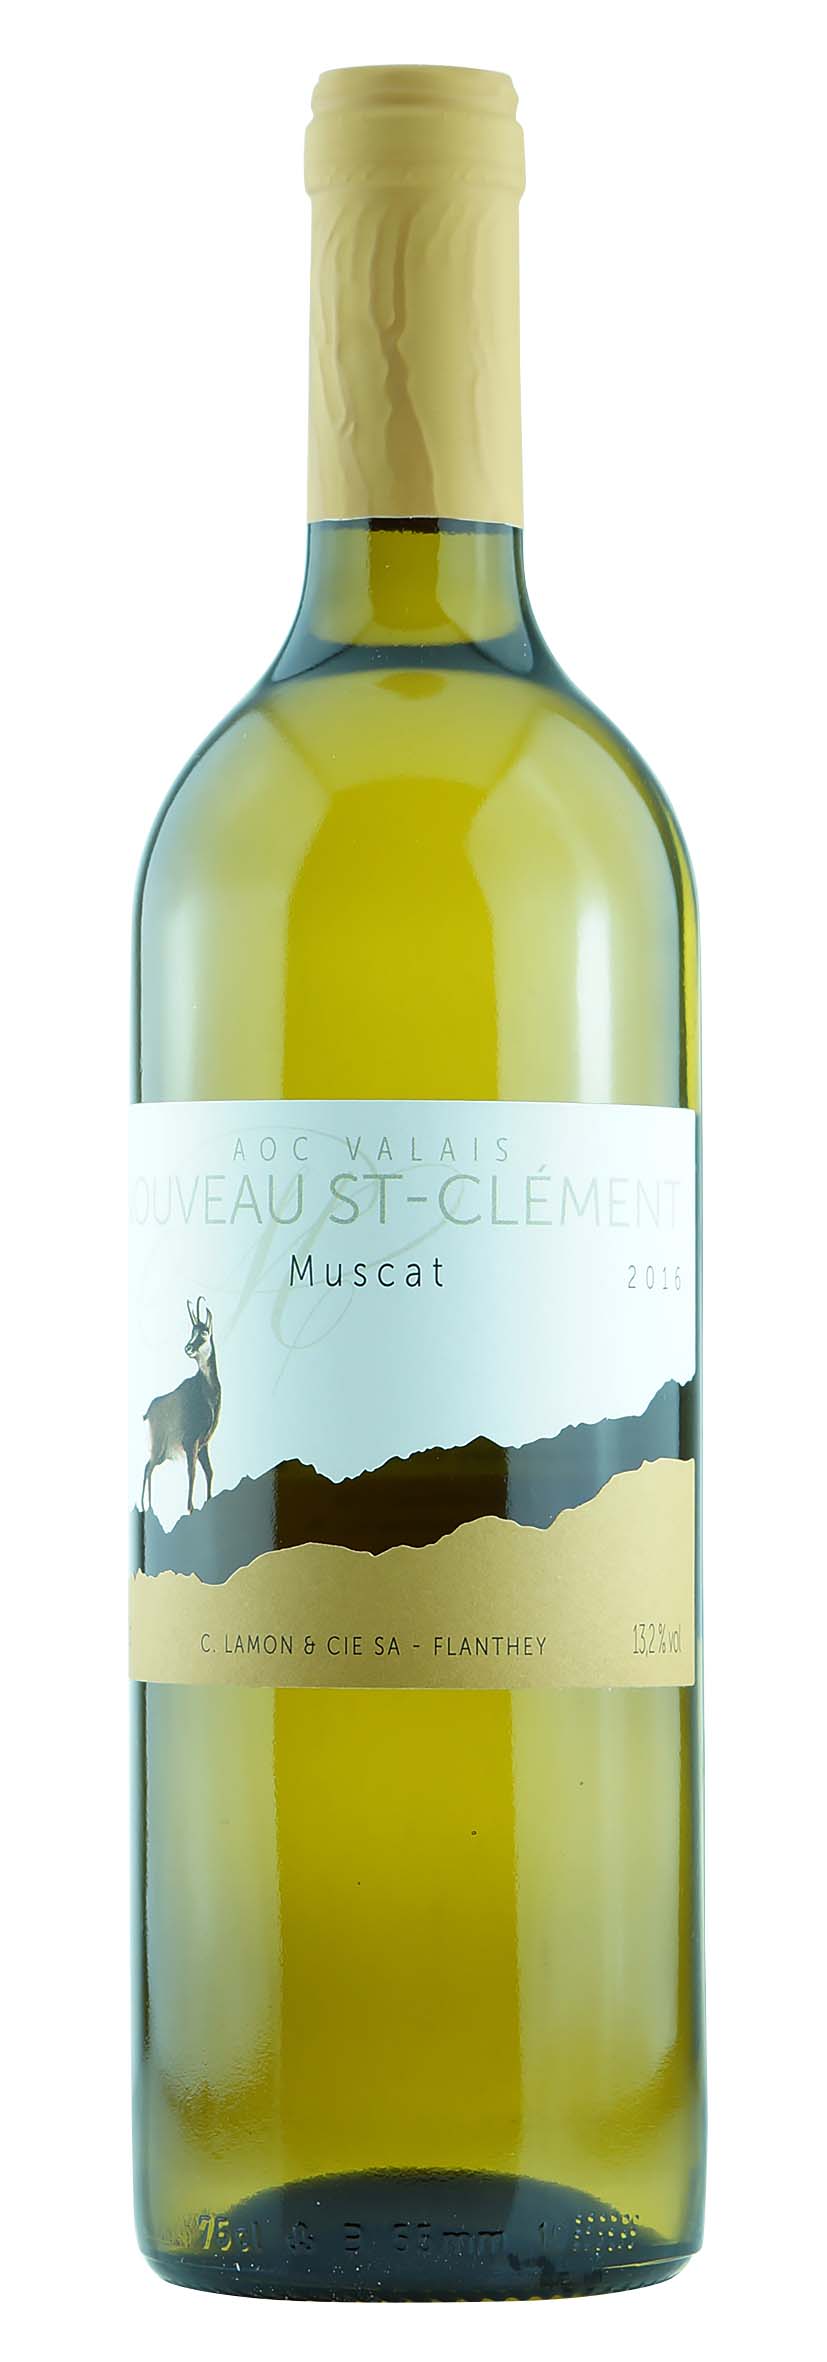 Valais AOC Nouveau St-Clément Muscat 2016